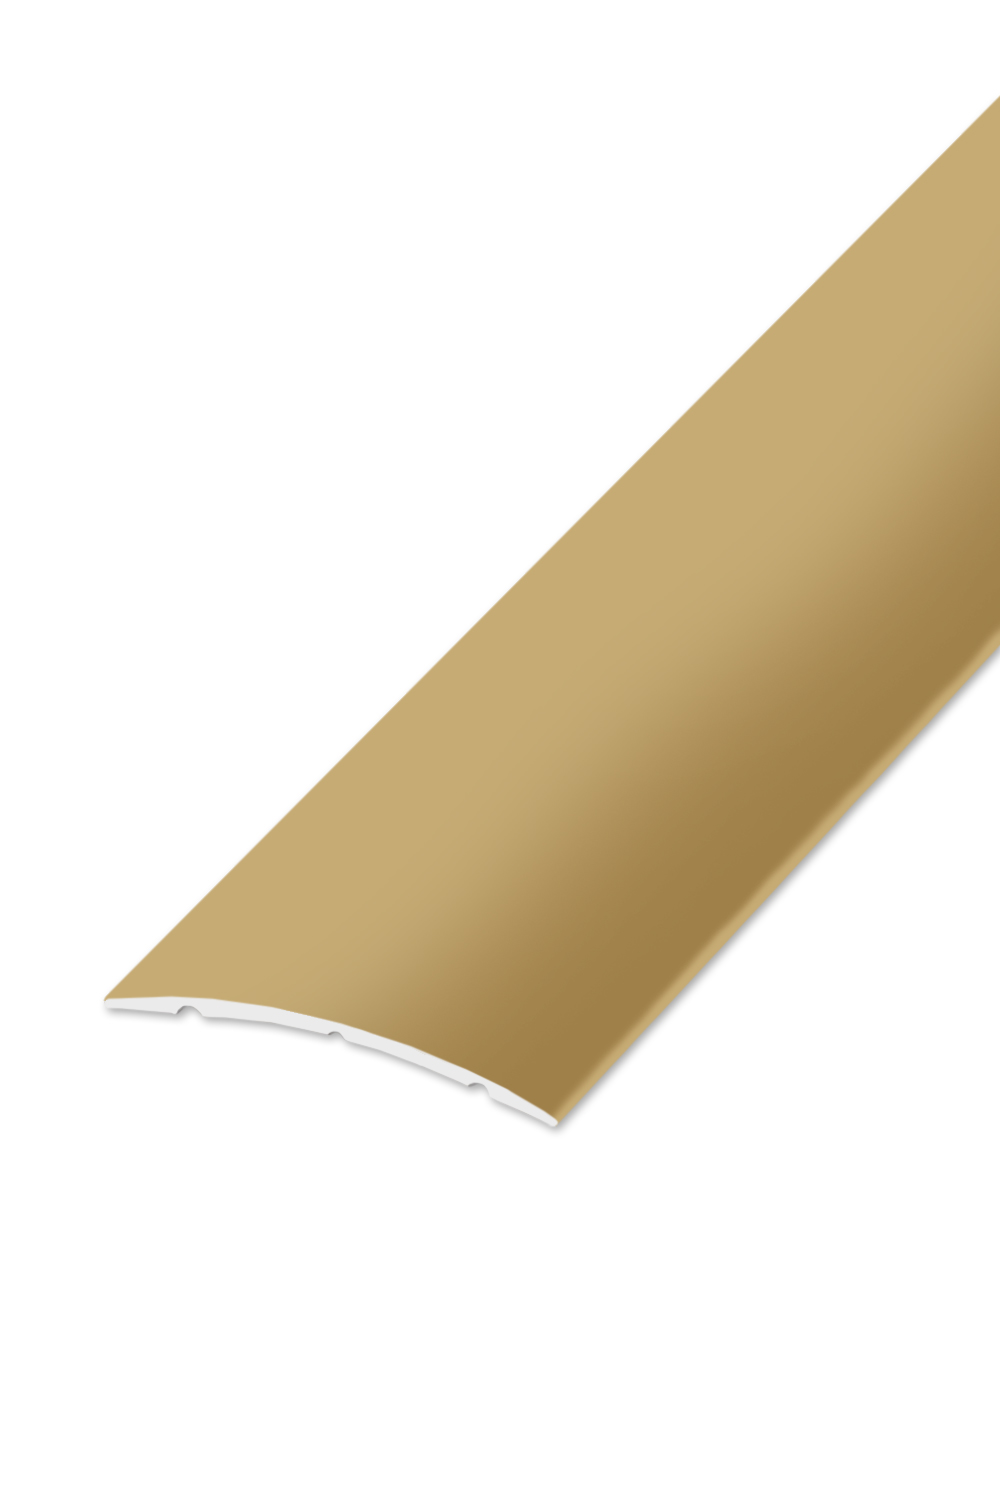 Přechodová lišta STANDARD 32 - Zlatá 270 cm